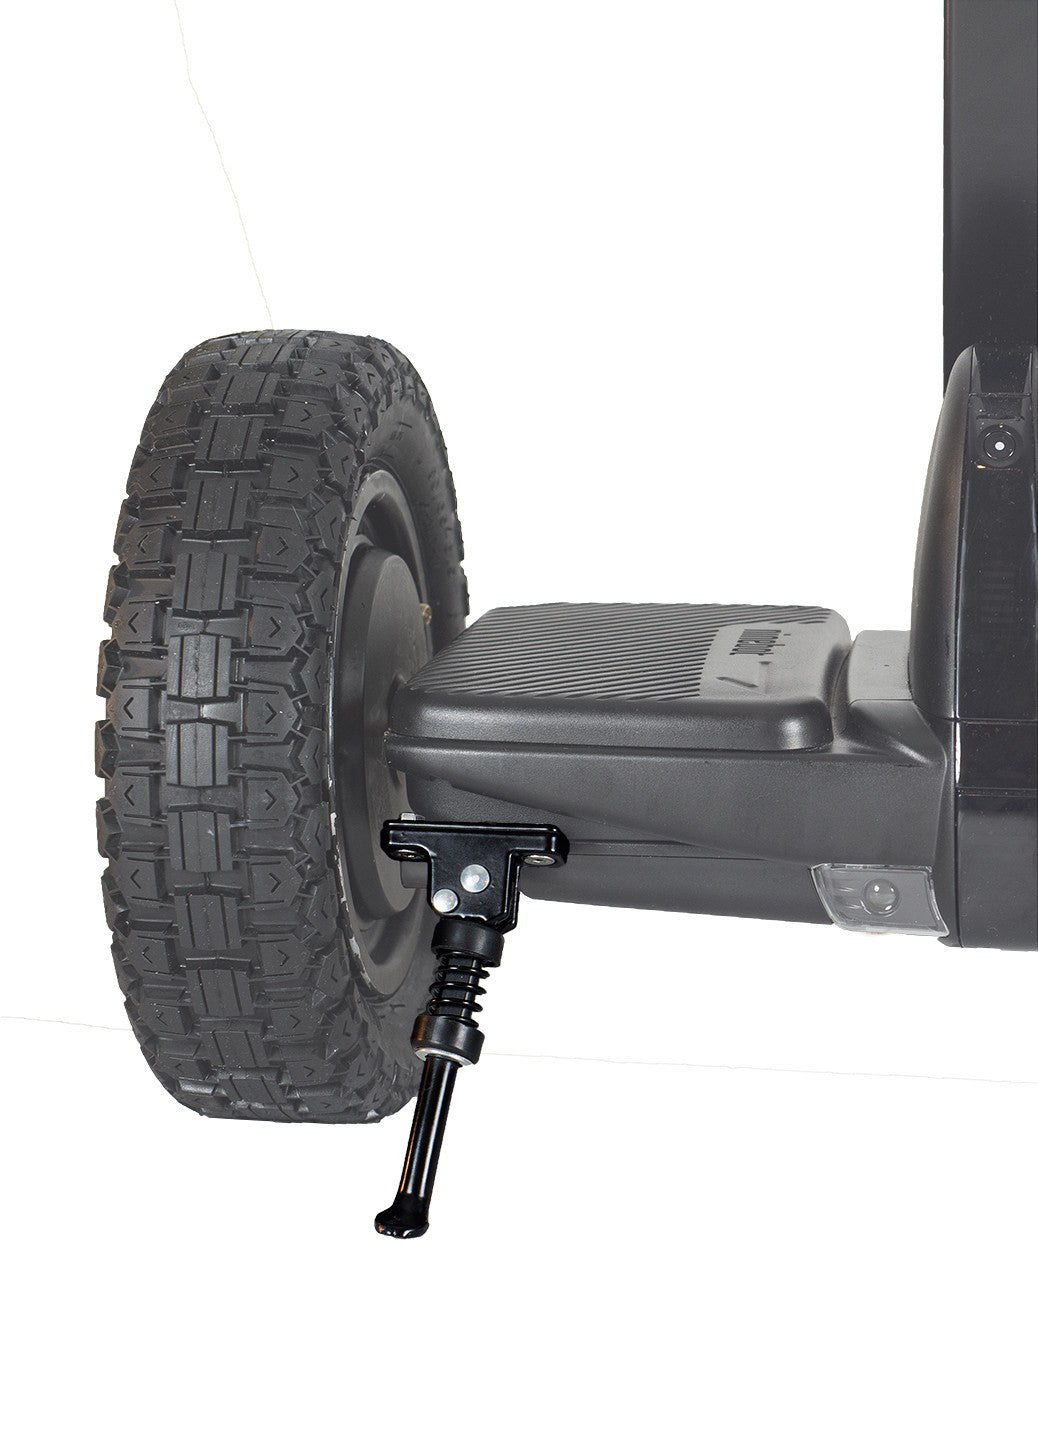 Segway MiniPro - Parking Stand Ninebot By Segway MiniPro - Dual Facing